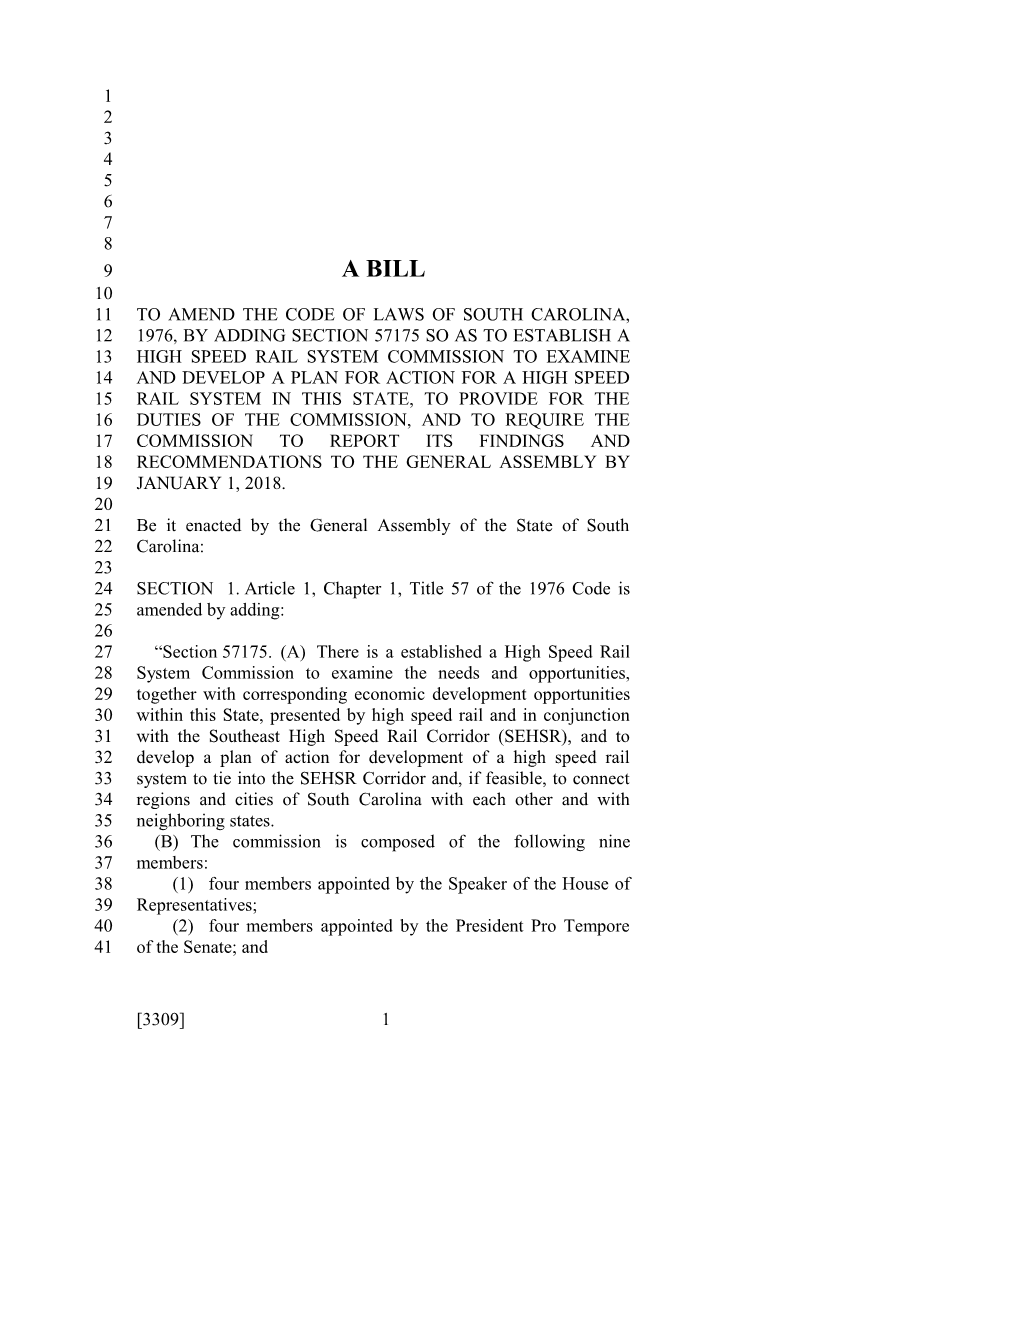 2017-2018 Bill 3309 Text of Previous Version (Dec. 15, 2016) - South Carolina Legislature Online